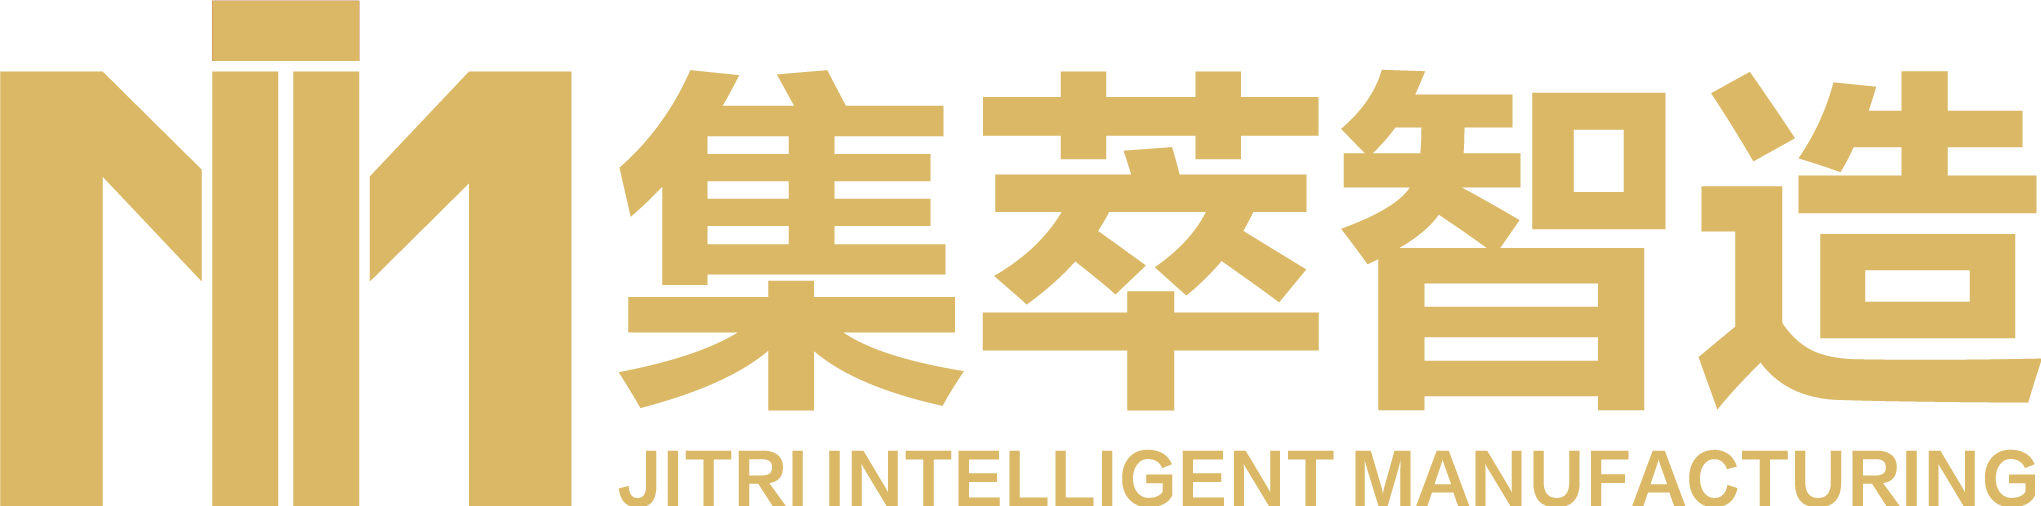 Jiangsu Jitri Intelligent Manufacturing Technology Institute Co., Ltd